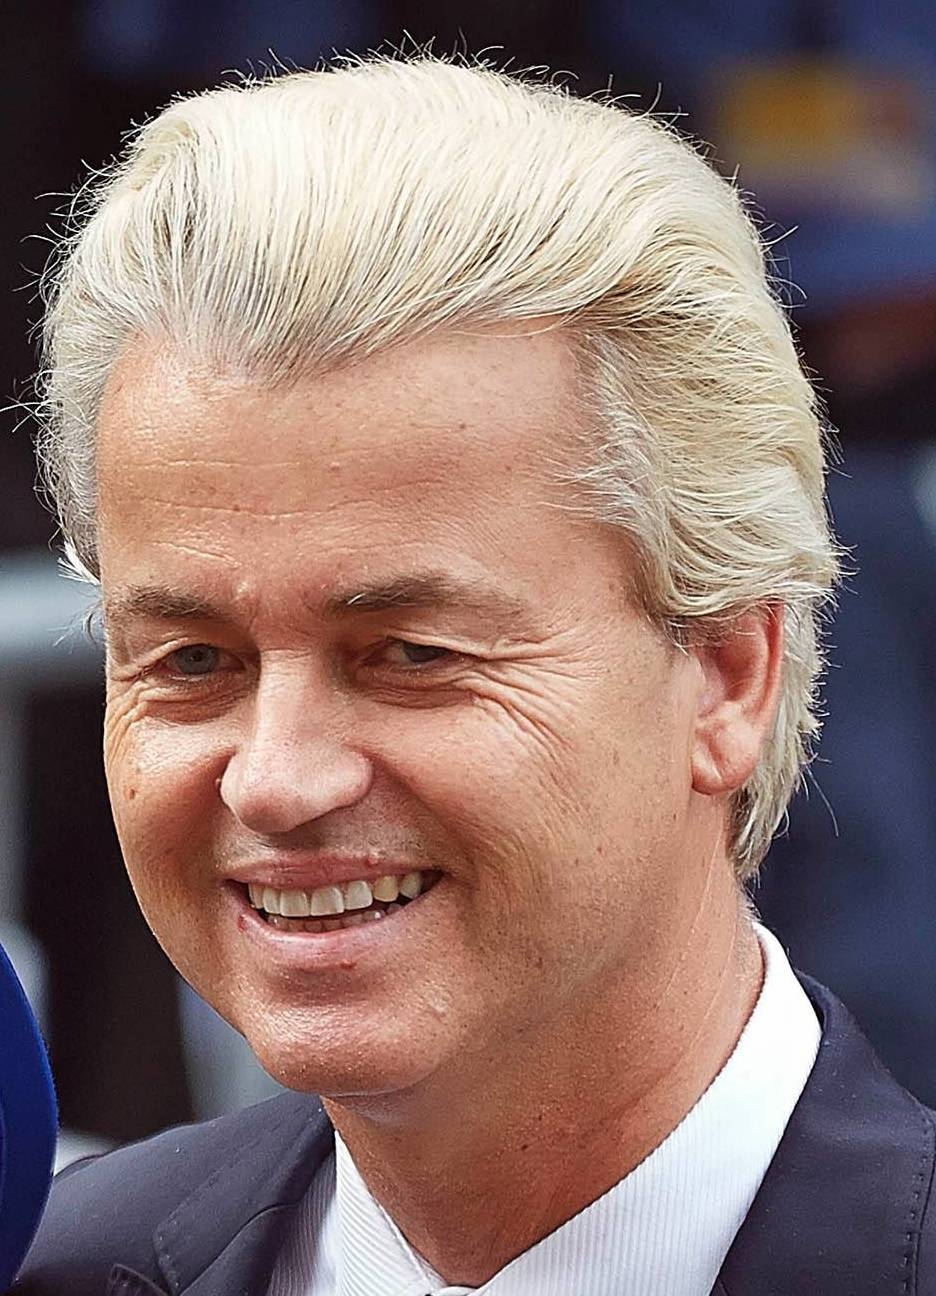 auteur Geert Wilders de la citation Je crois que les politiciens ont une confiance publique pour poursuivre les débats sur les questions importantes. Je crois fermement que chaque débat public détient la perspective d'illumination.